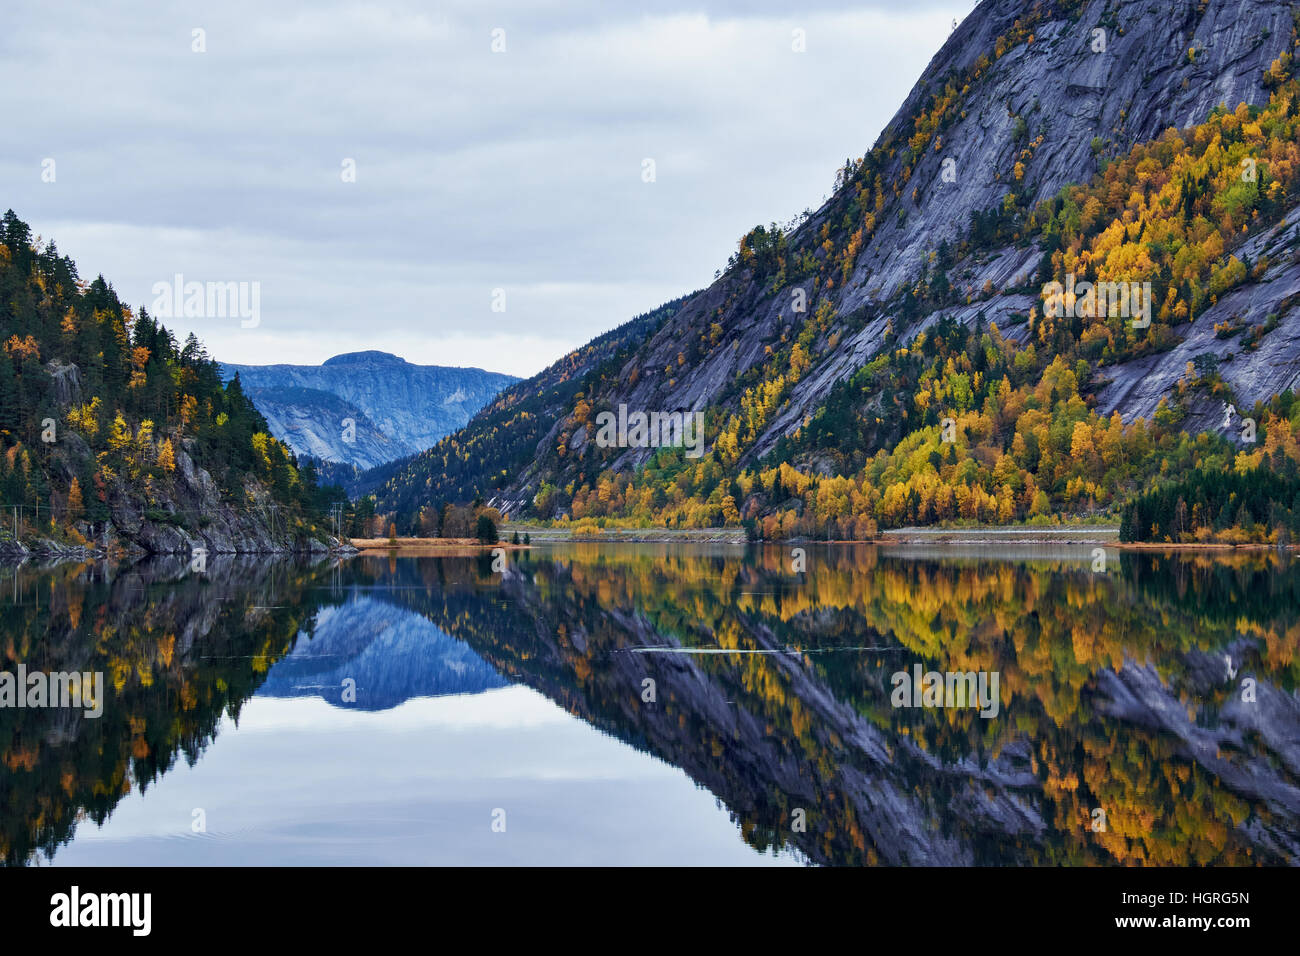 Bergseite mit Baum Vegetation Spiegelung in völlig ruhiger See in einem See in Norwegen Stockfoto